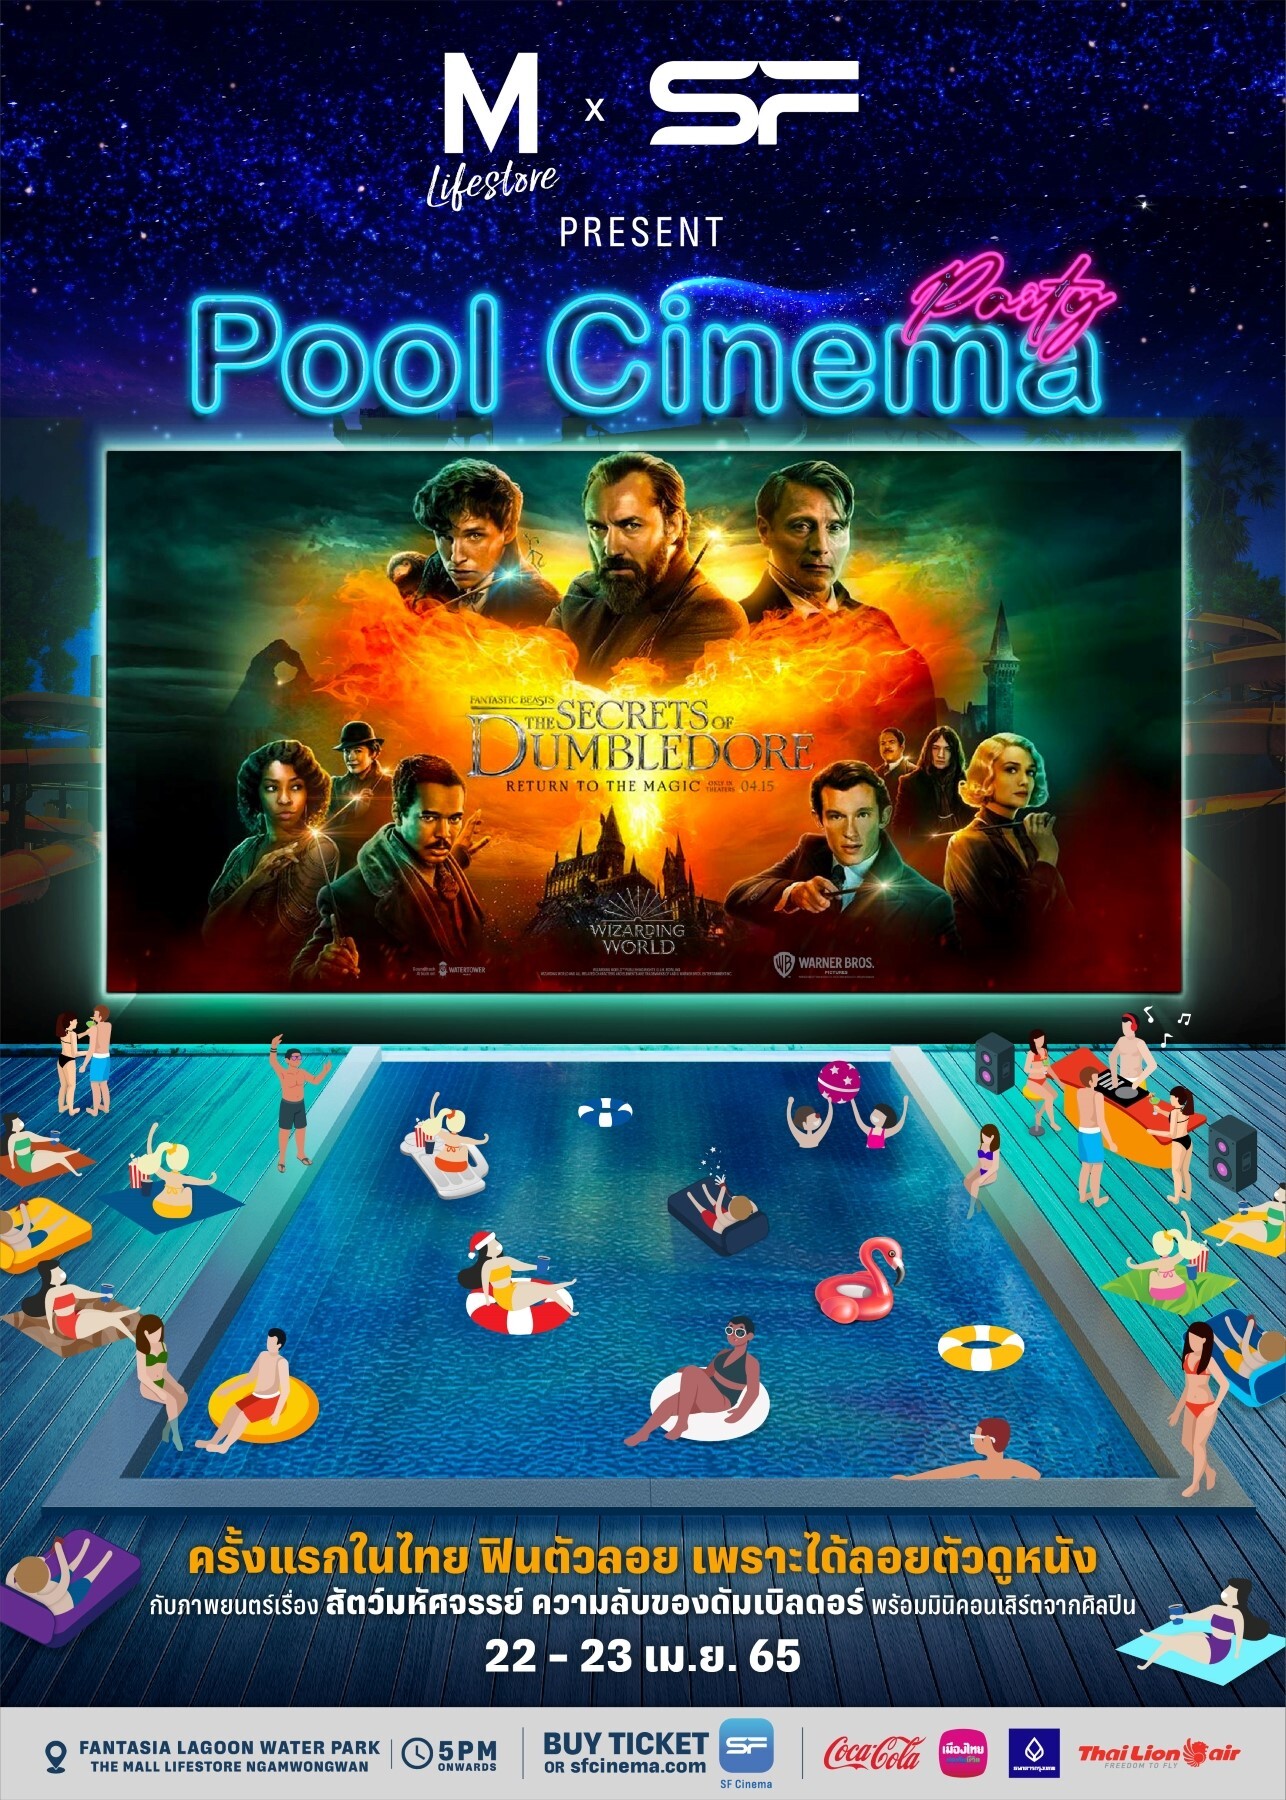 เอส เอฟ ร่วมกับ เดอะมอลล์ กรุ๊ป ต้อนรับซัมเมอร์จัด "Pool Cinema Party"  ดูหนังกลางสวนน้ำ ครั้งแรกในไทย